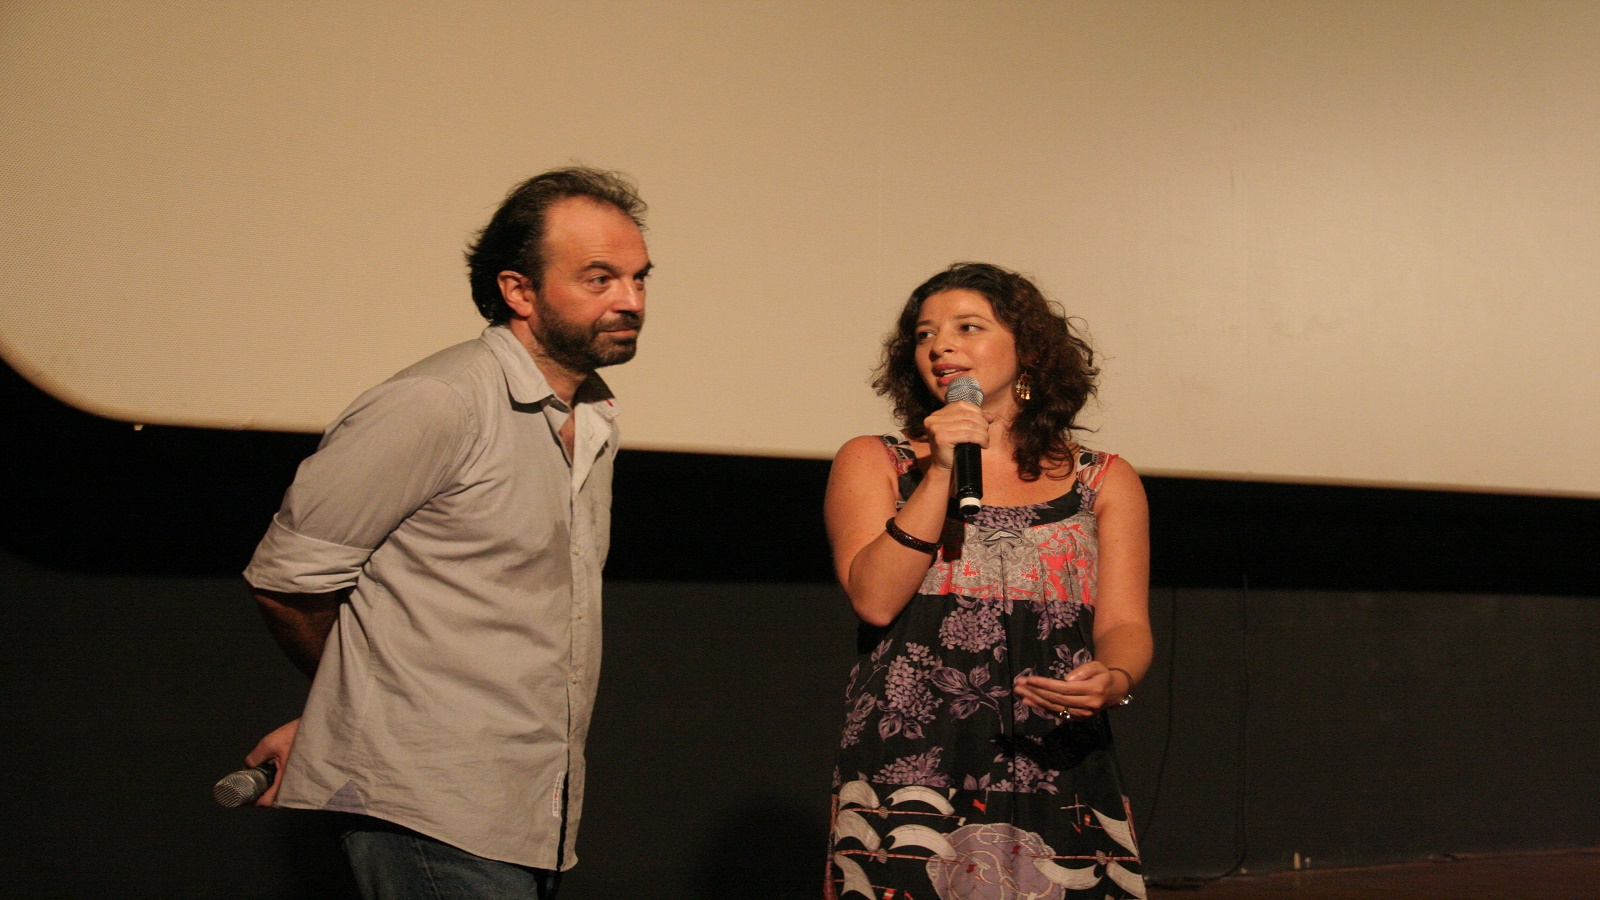 مروة مع غسان سلهب خلال العرض الأول لفيلمه “الوادي”.